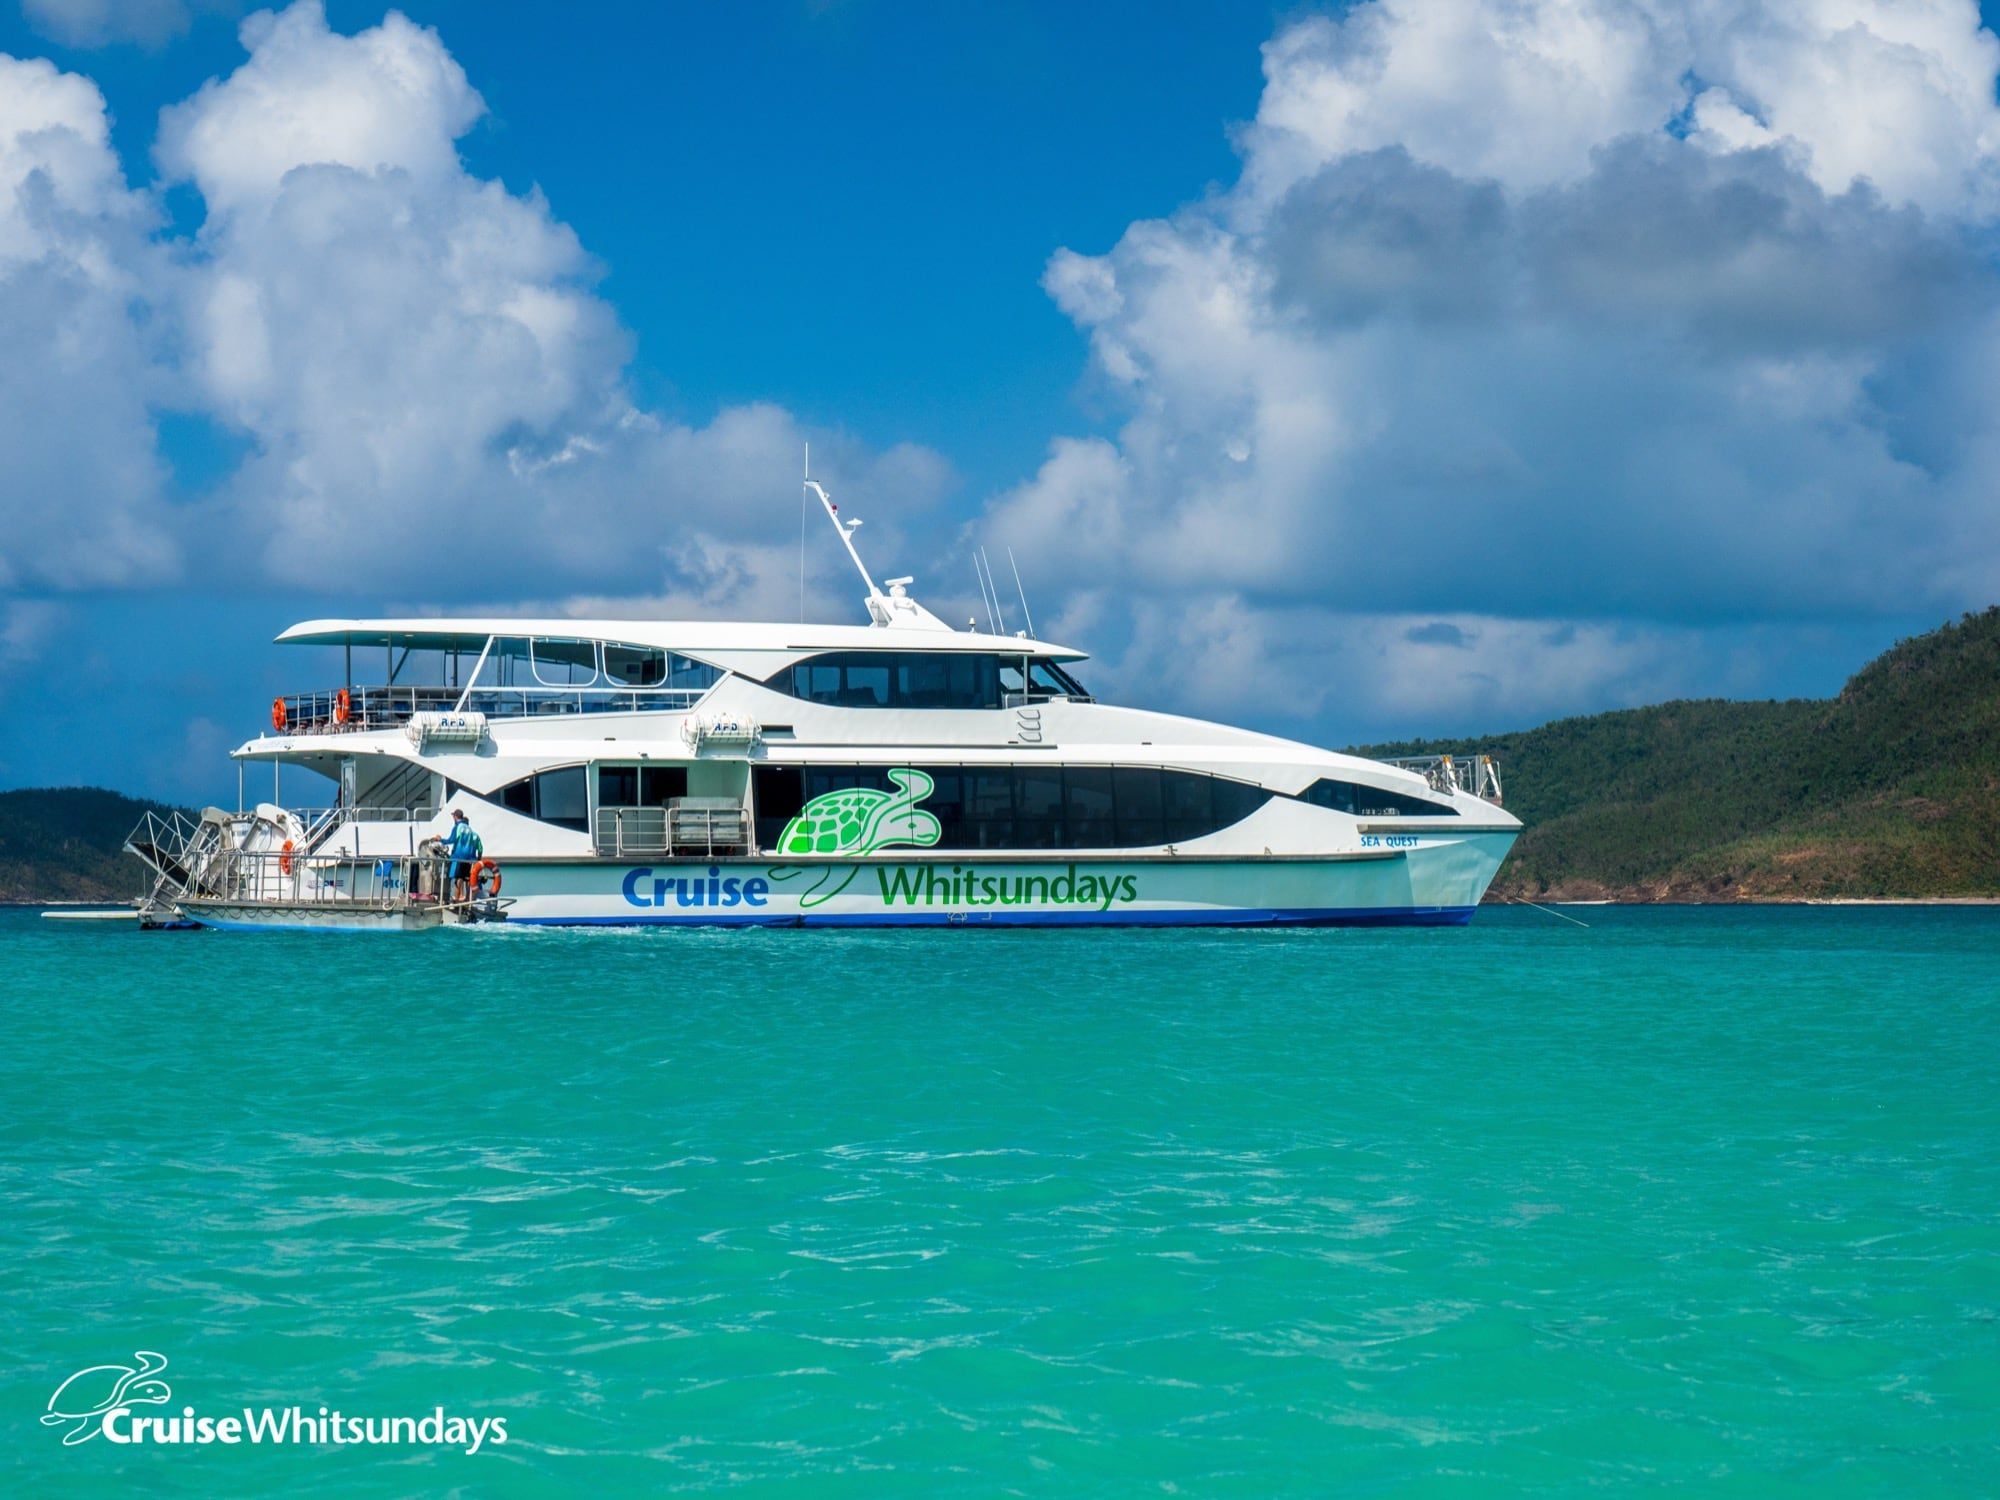 whitsundays cruises 3 days